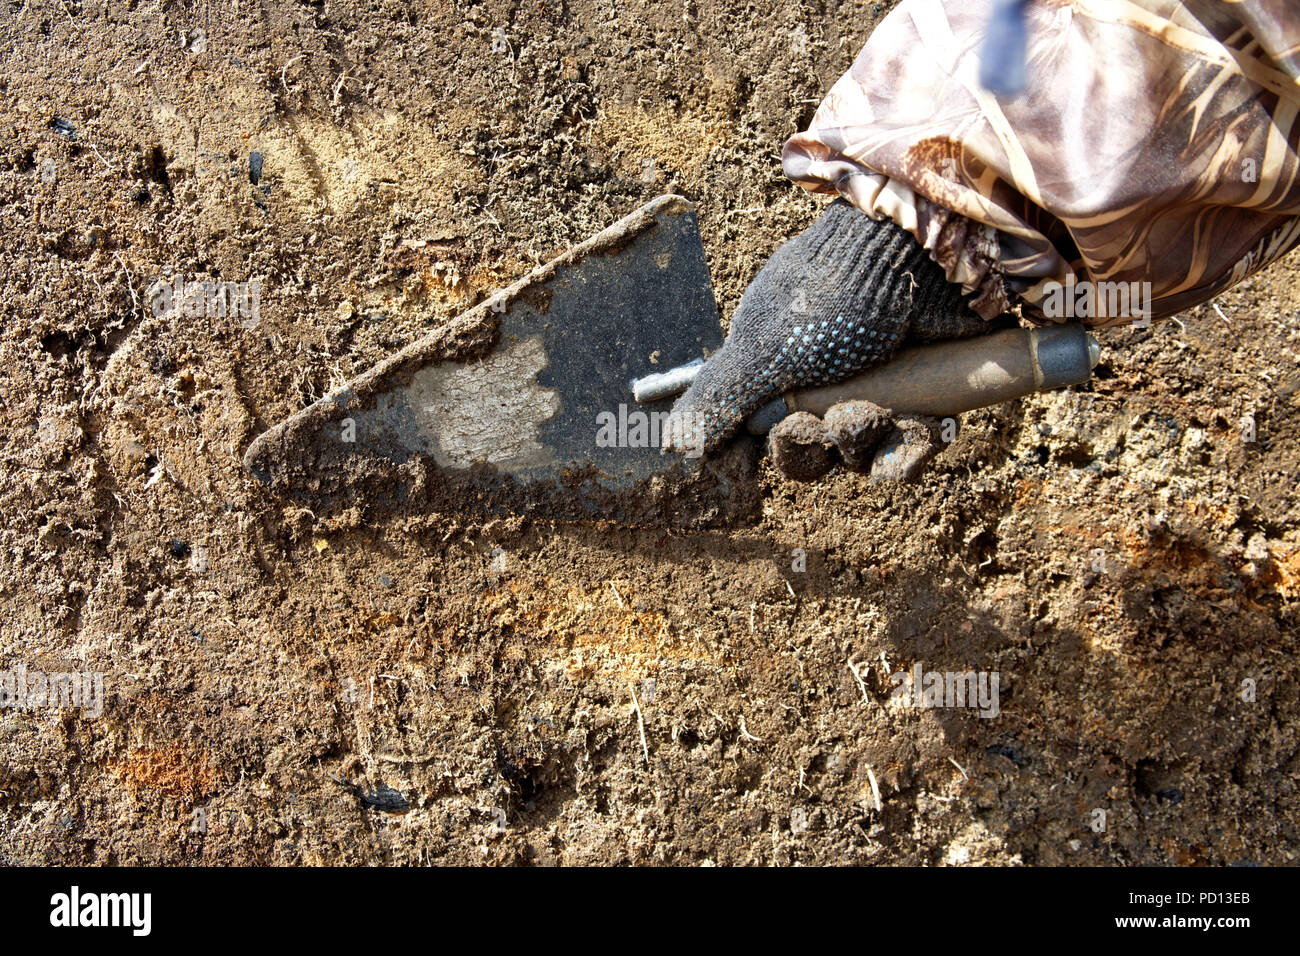 La main de l'archéologue dans un gant de protection avec une truelle. L'alignement de la paroi de l'excavation pour identifier la couche culturelle Banque D'Images